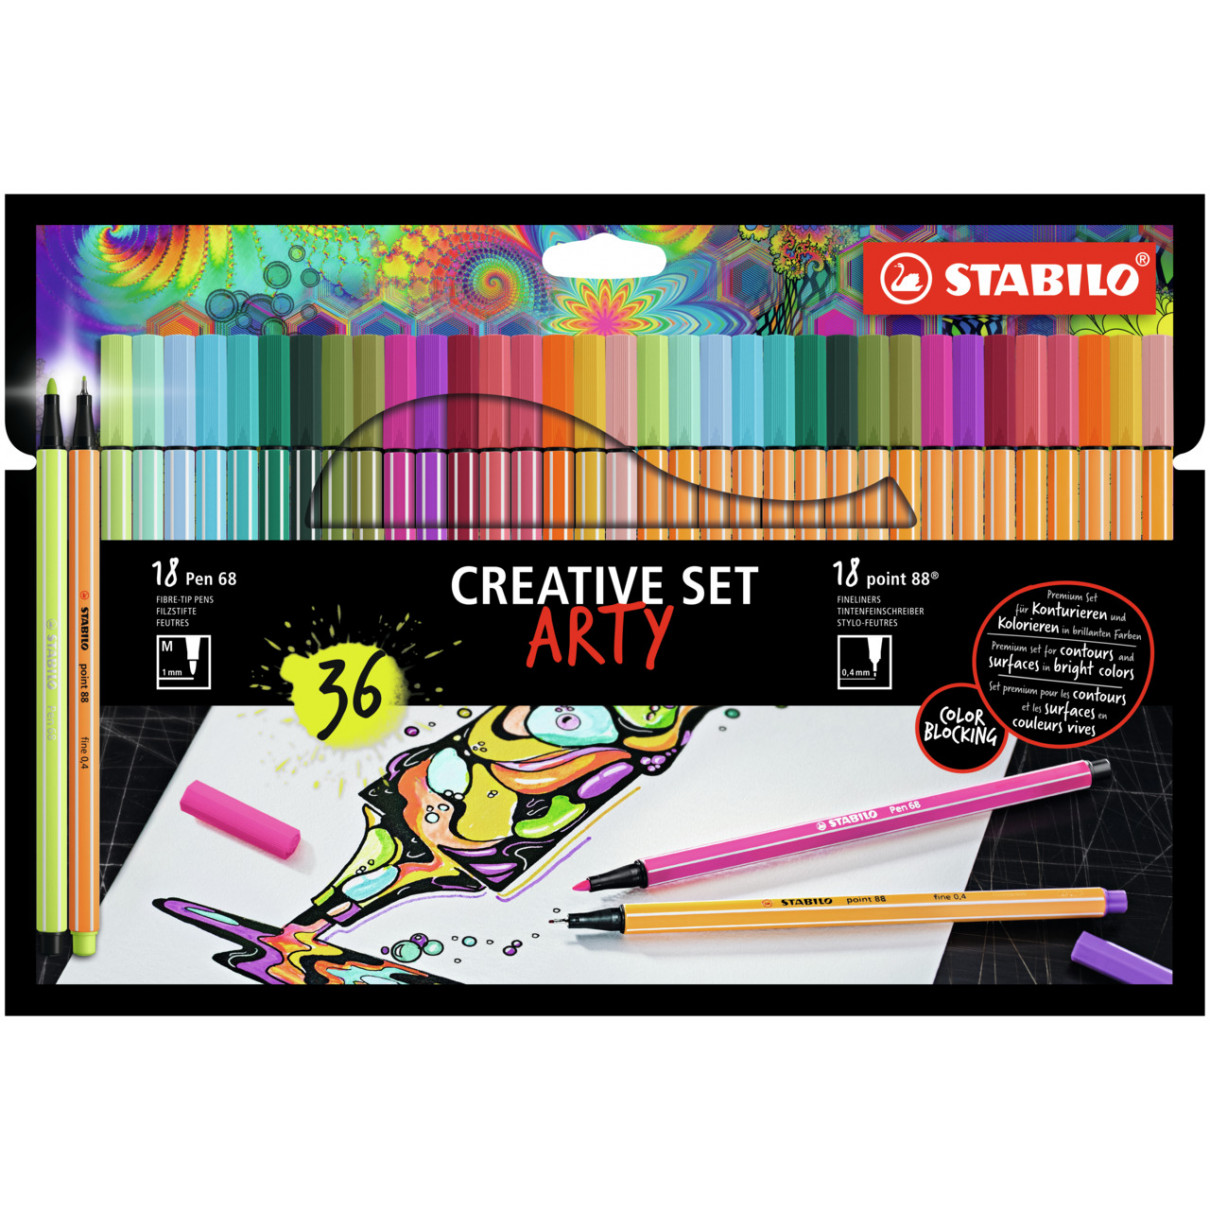 STABILO Pen 68 Fibre Tip Pen  & point 88 ARTY Fineliner  - Wallet of 36